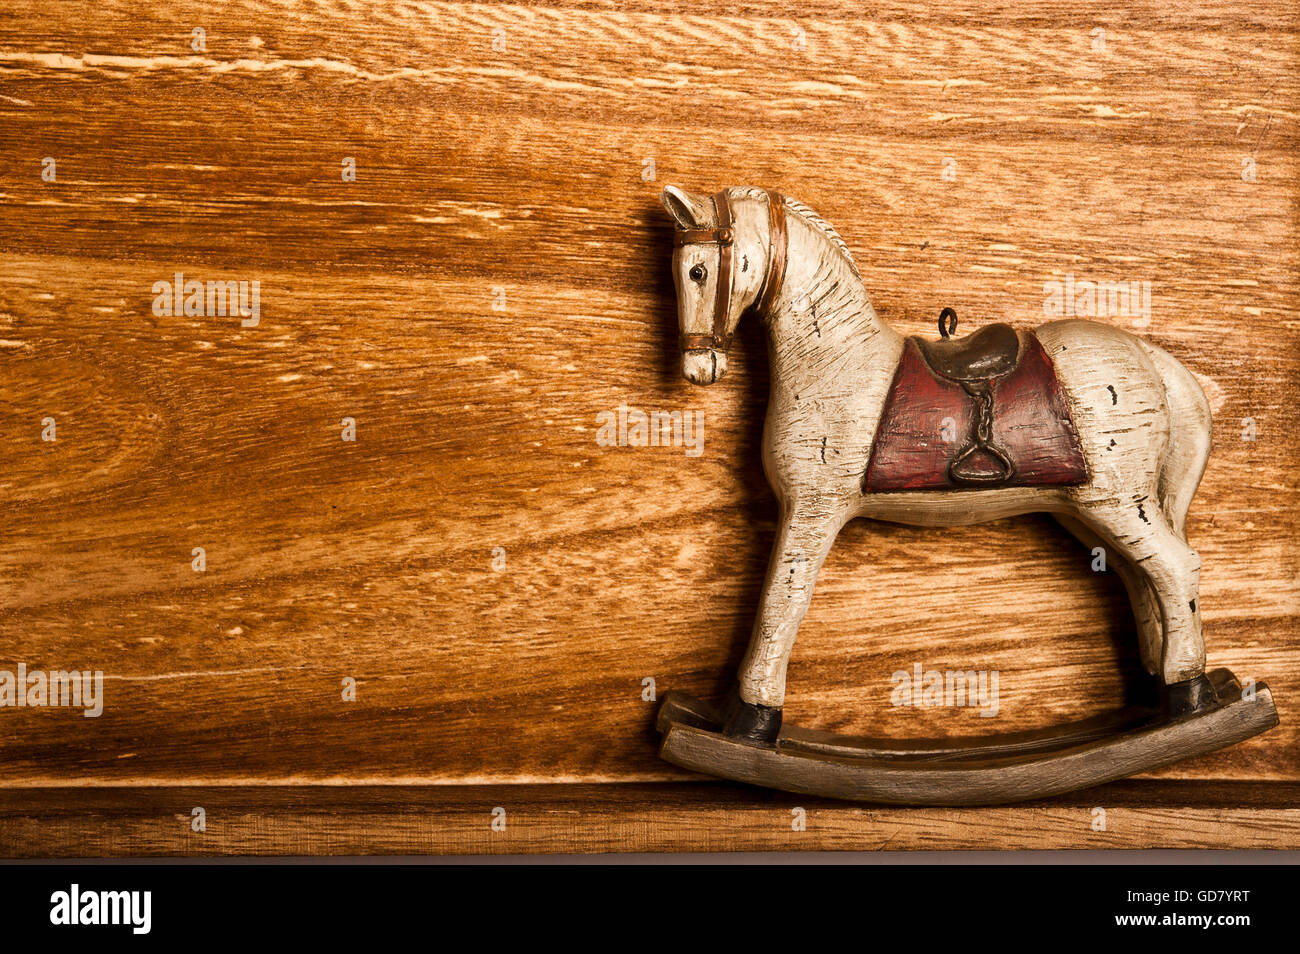 vintage rocking horse on wood Stock Photo